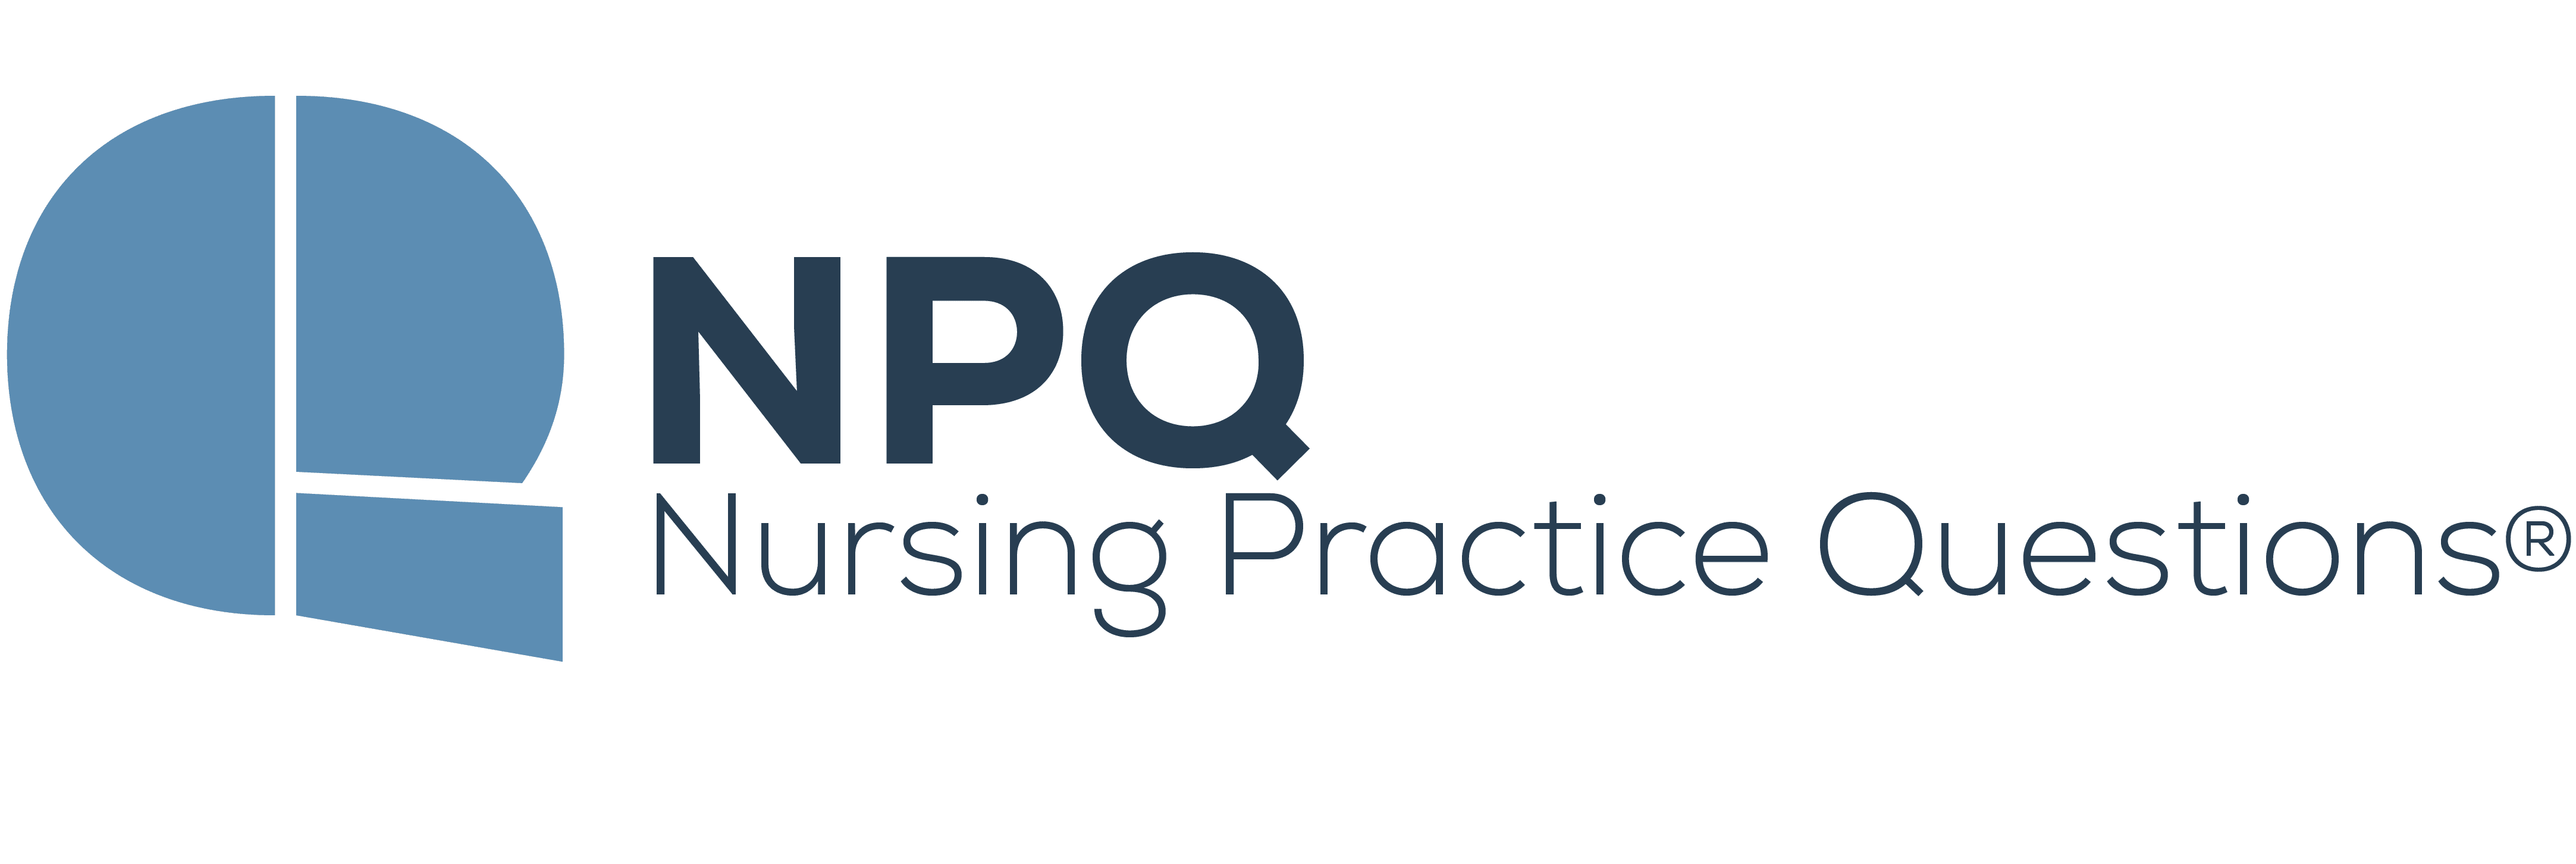 NPQ - nursing practice questions LOGO - COLOR